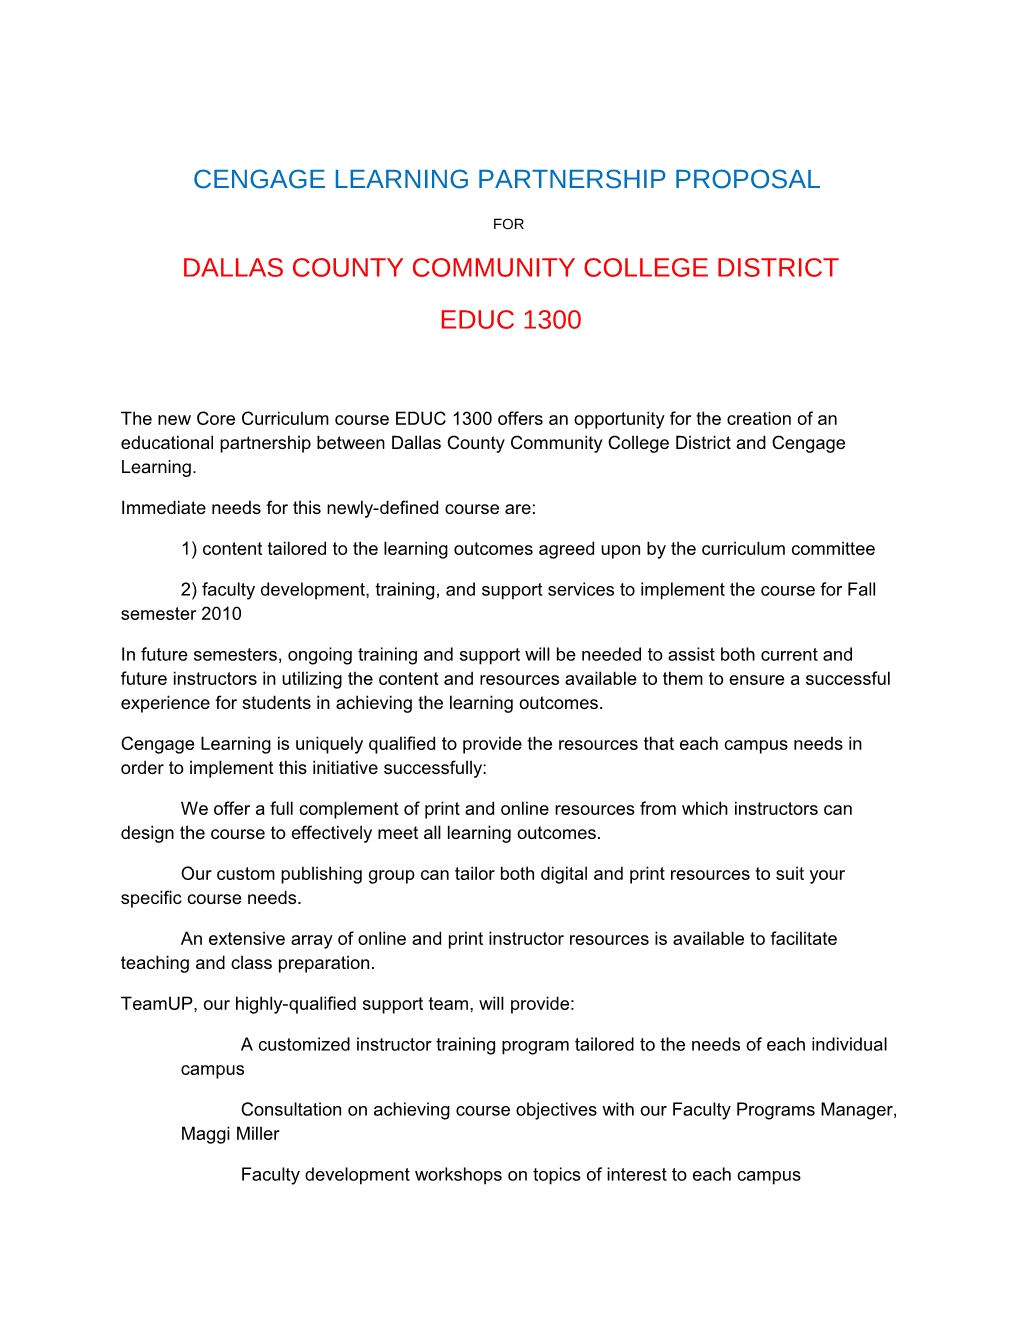 Cengage Learning Partnership Proposal